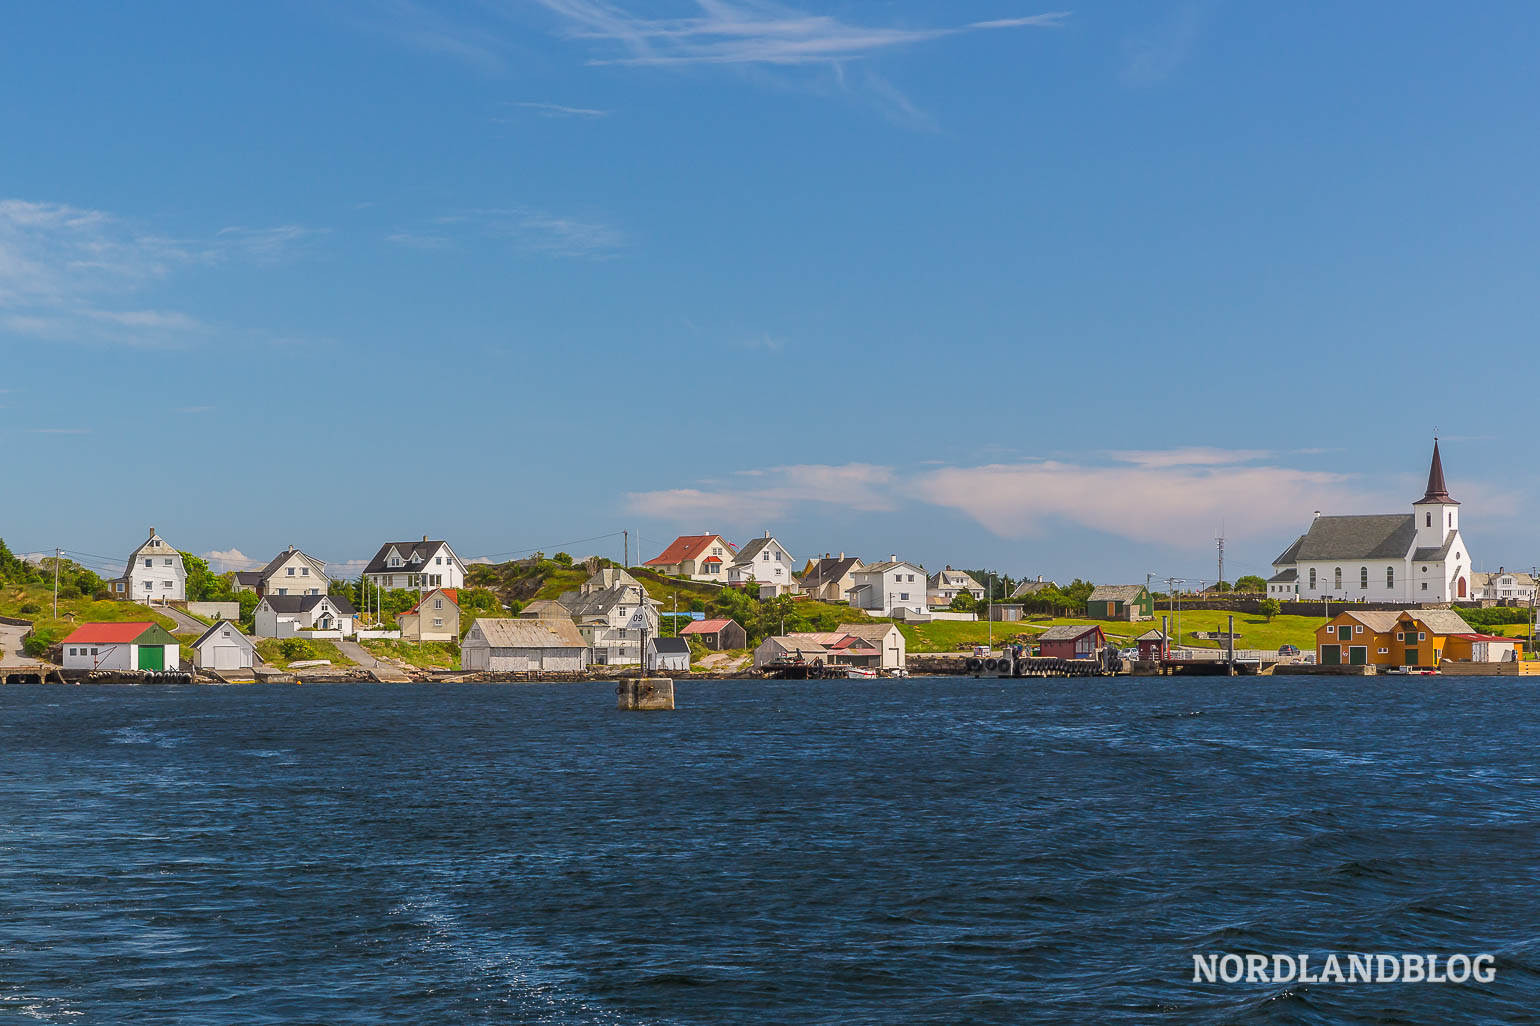 Insel Fedje in der Umgebung von Bergen (Norwegen) hier im Nordlandblog